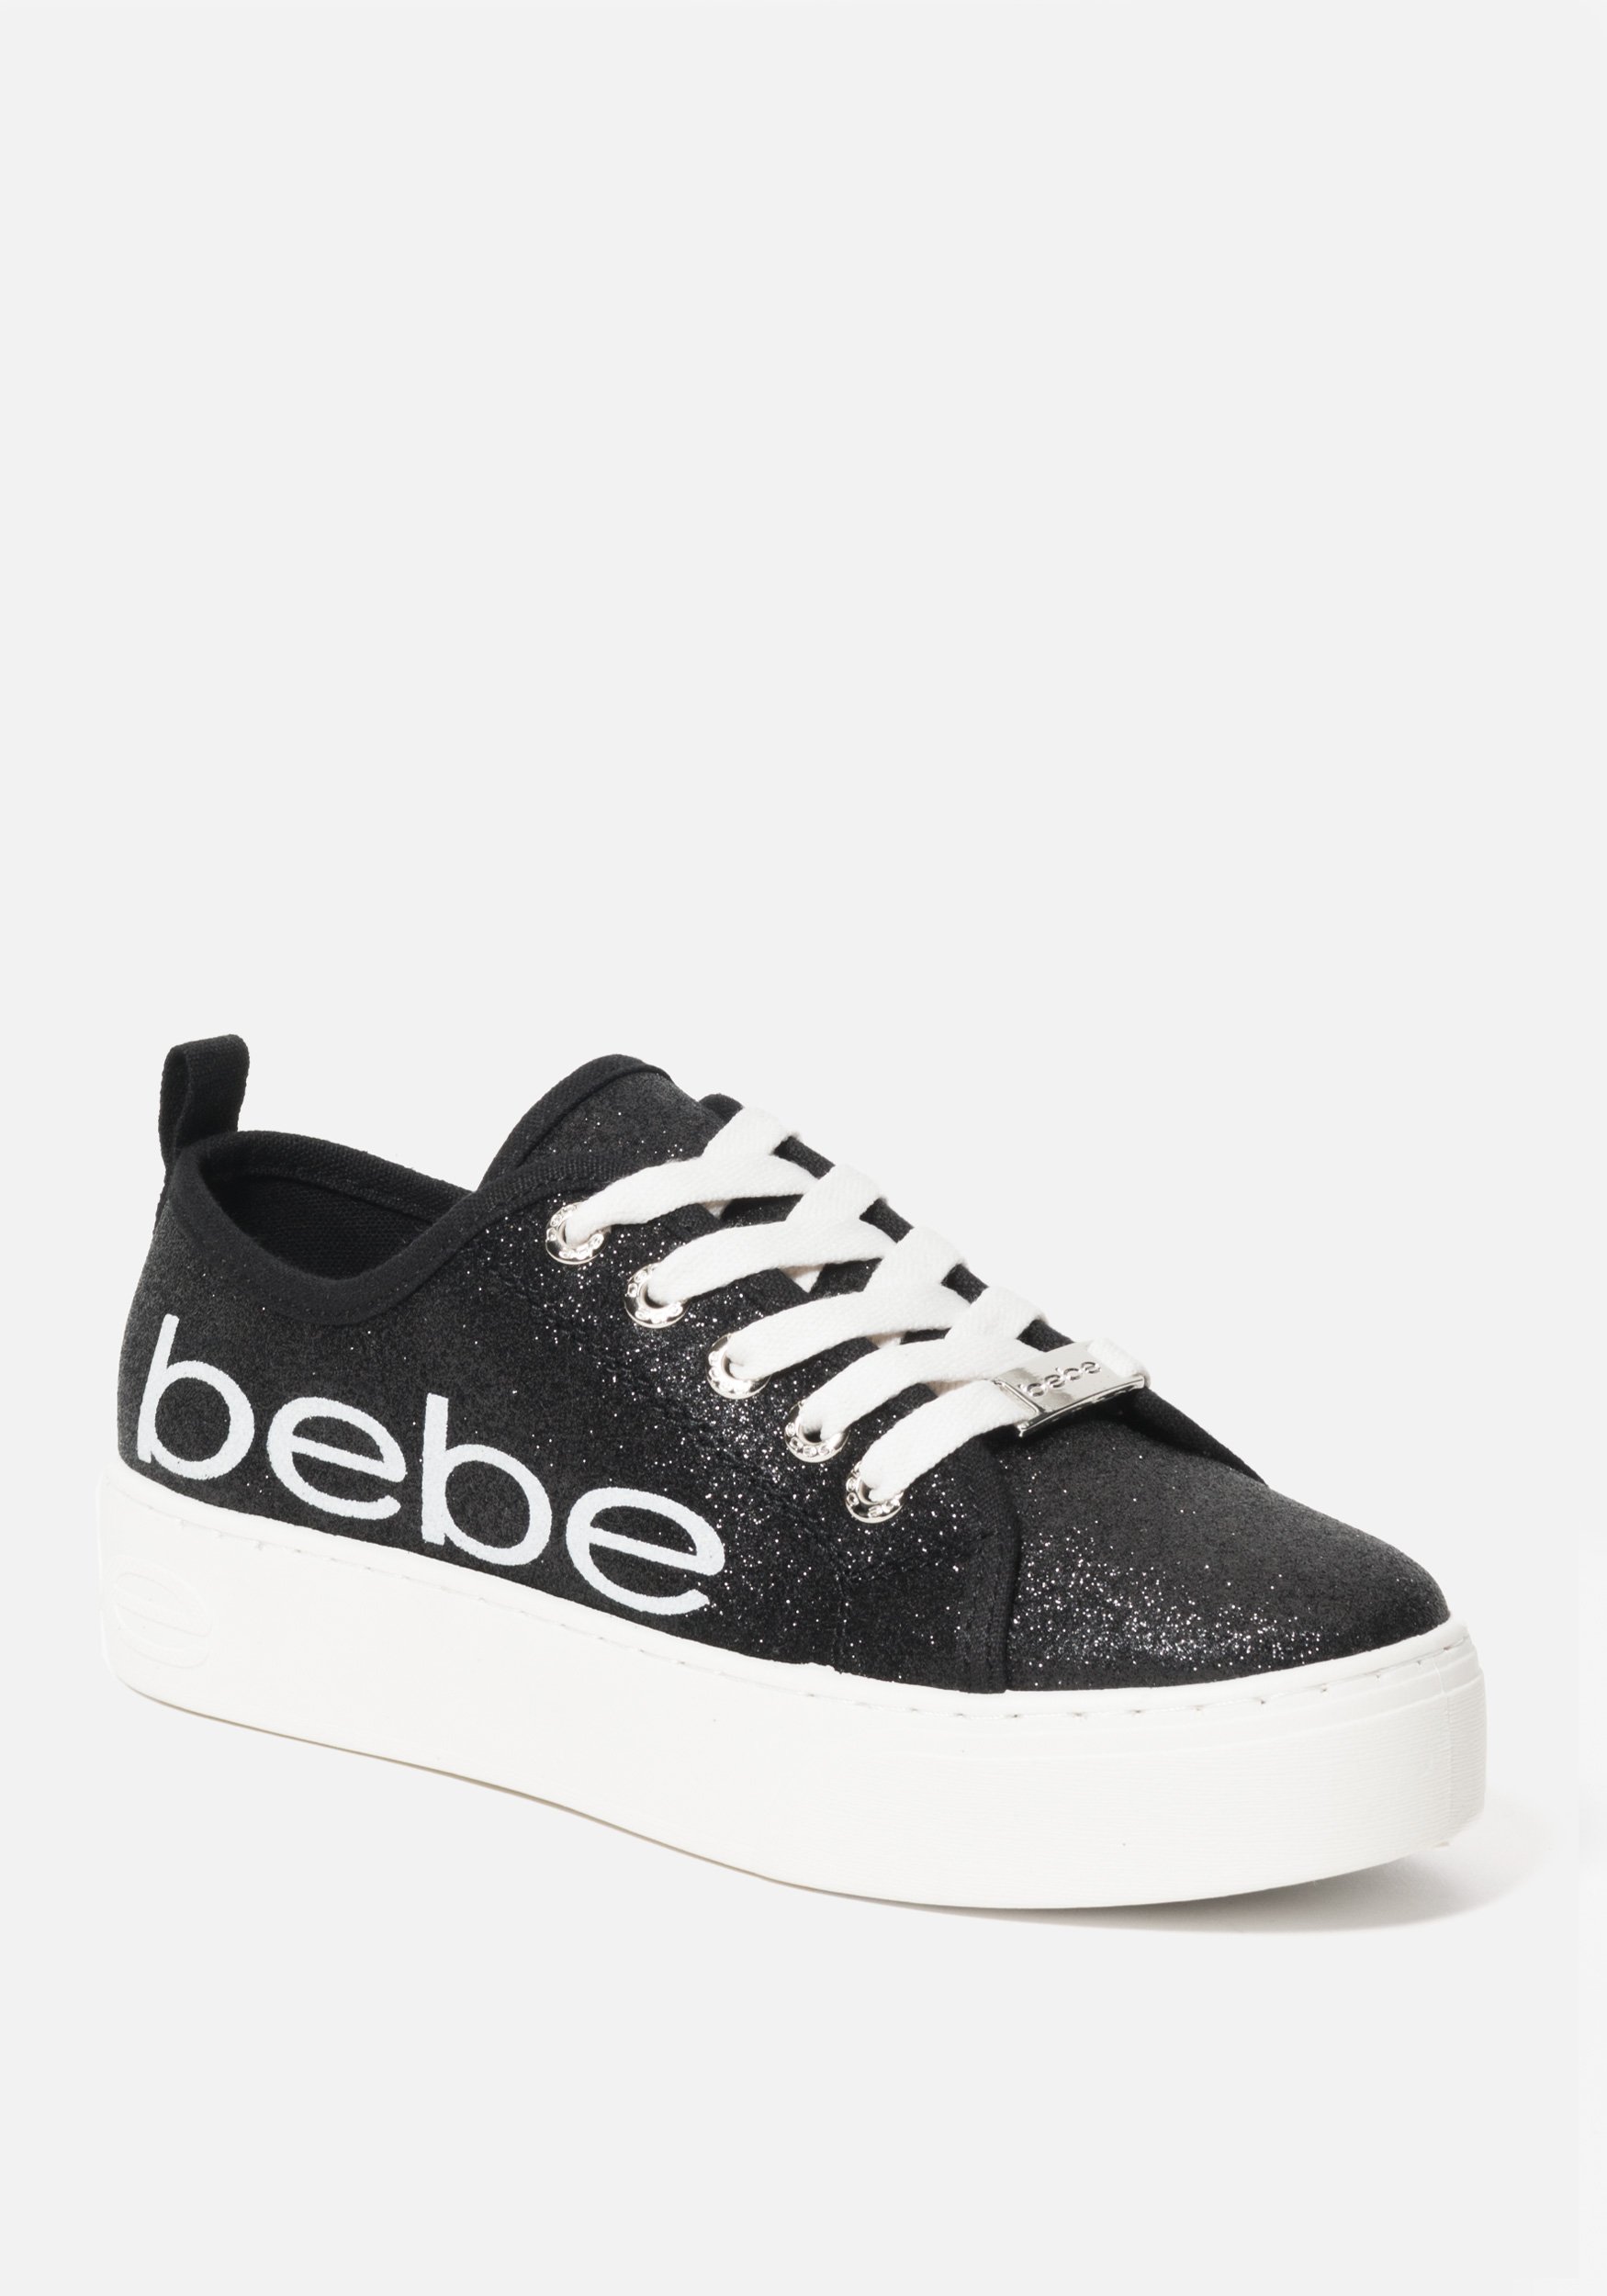 Women's Dovie Bebe Logo Sneakers, Size 10.5 in BLACK GLITTER Synthetic